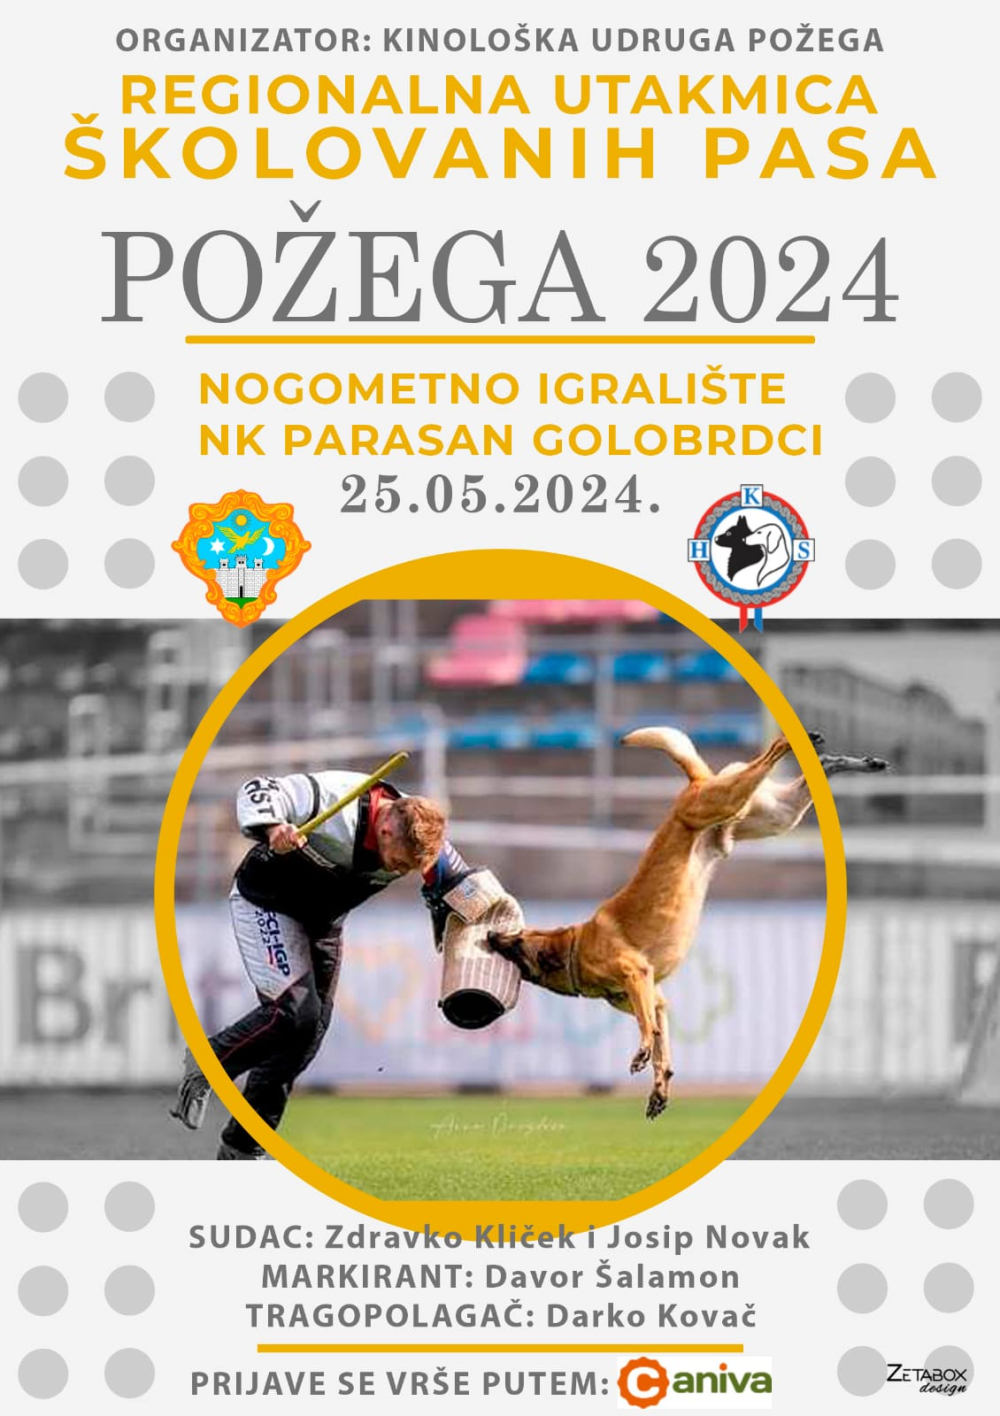 Požega.eu | ČETVERONOŽNI LJUBIMCI: Ove subote u Golobrcima Regionalna utakmica školovanih pasa